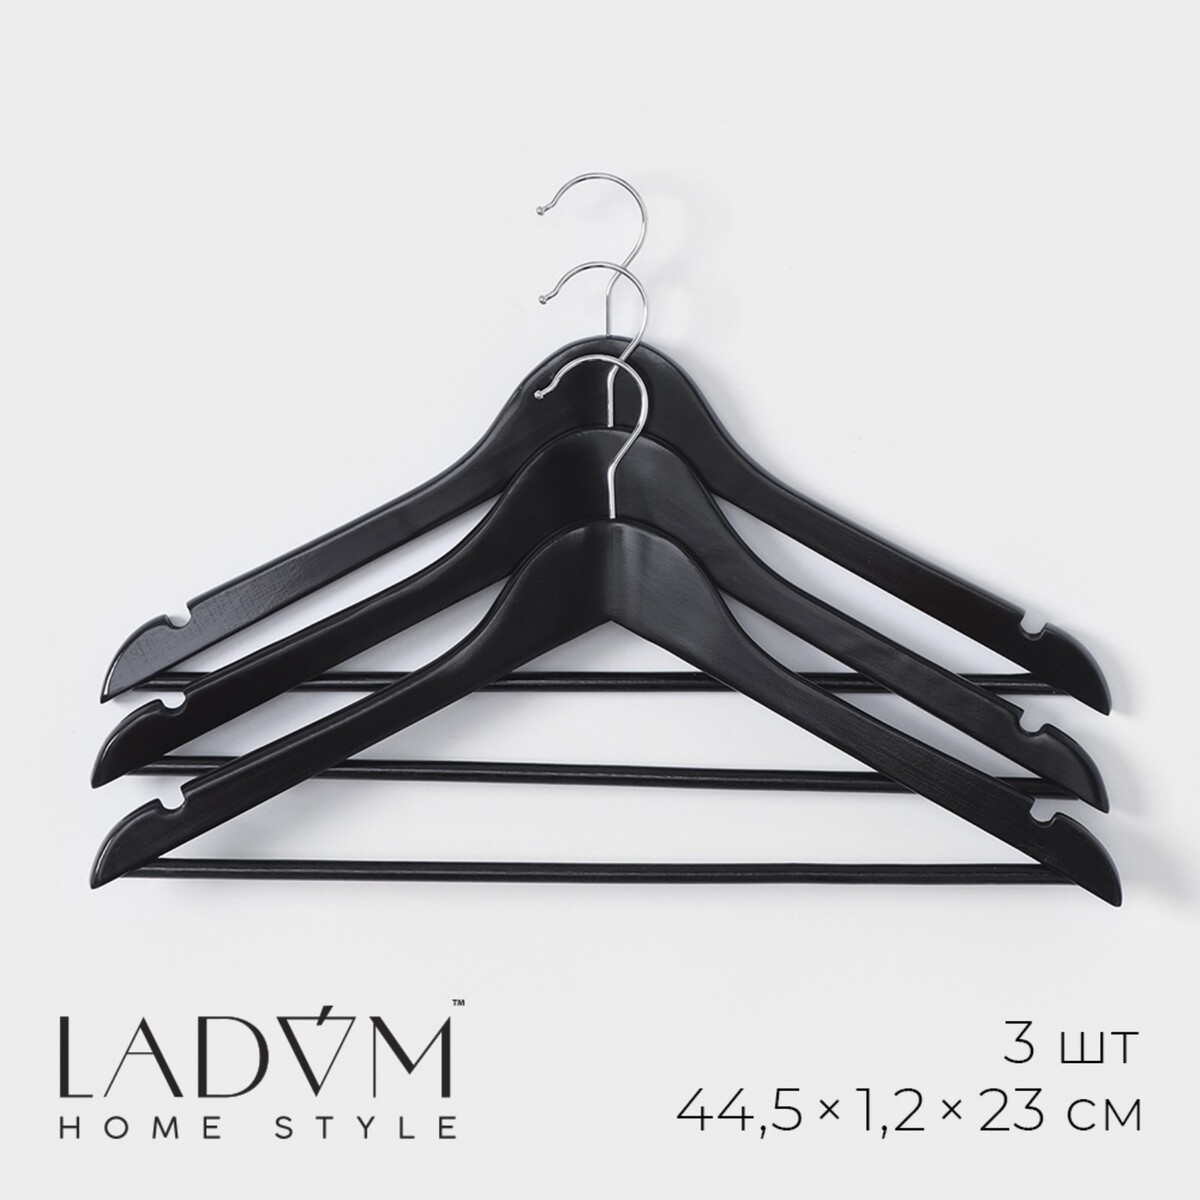 Плечики - вешалки для одежды с перекладиной ladо́m bois, 44,5×1,2×23 см, 3 шт,сорт а, цвет темное дерево плечики вешалки для одежды ladо́m